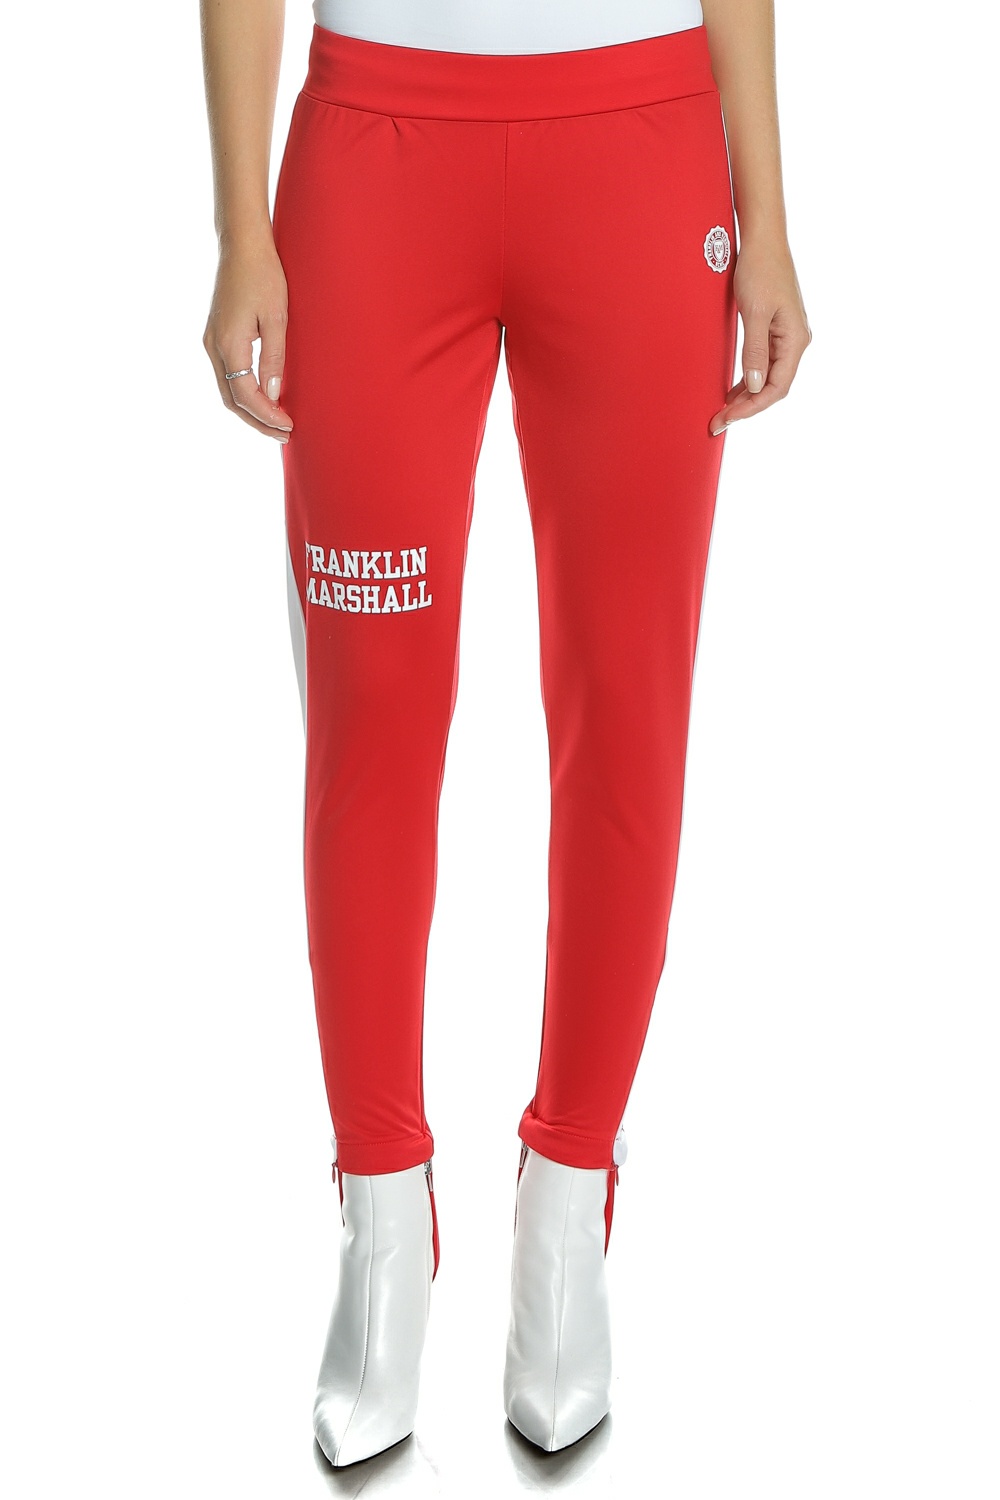 Γυναικεία/Ρούχα/Αθλητικά/Φόρμες FRANKLIN & MARSHALL - Γυναικείο παντελόνι φόρμας FRANKLIN & MARSHALL κόκκινο